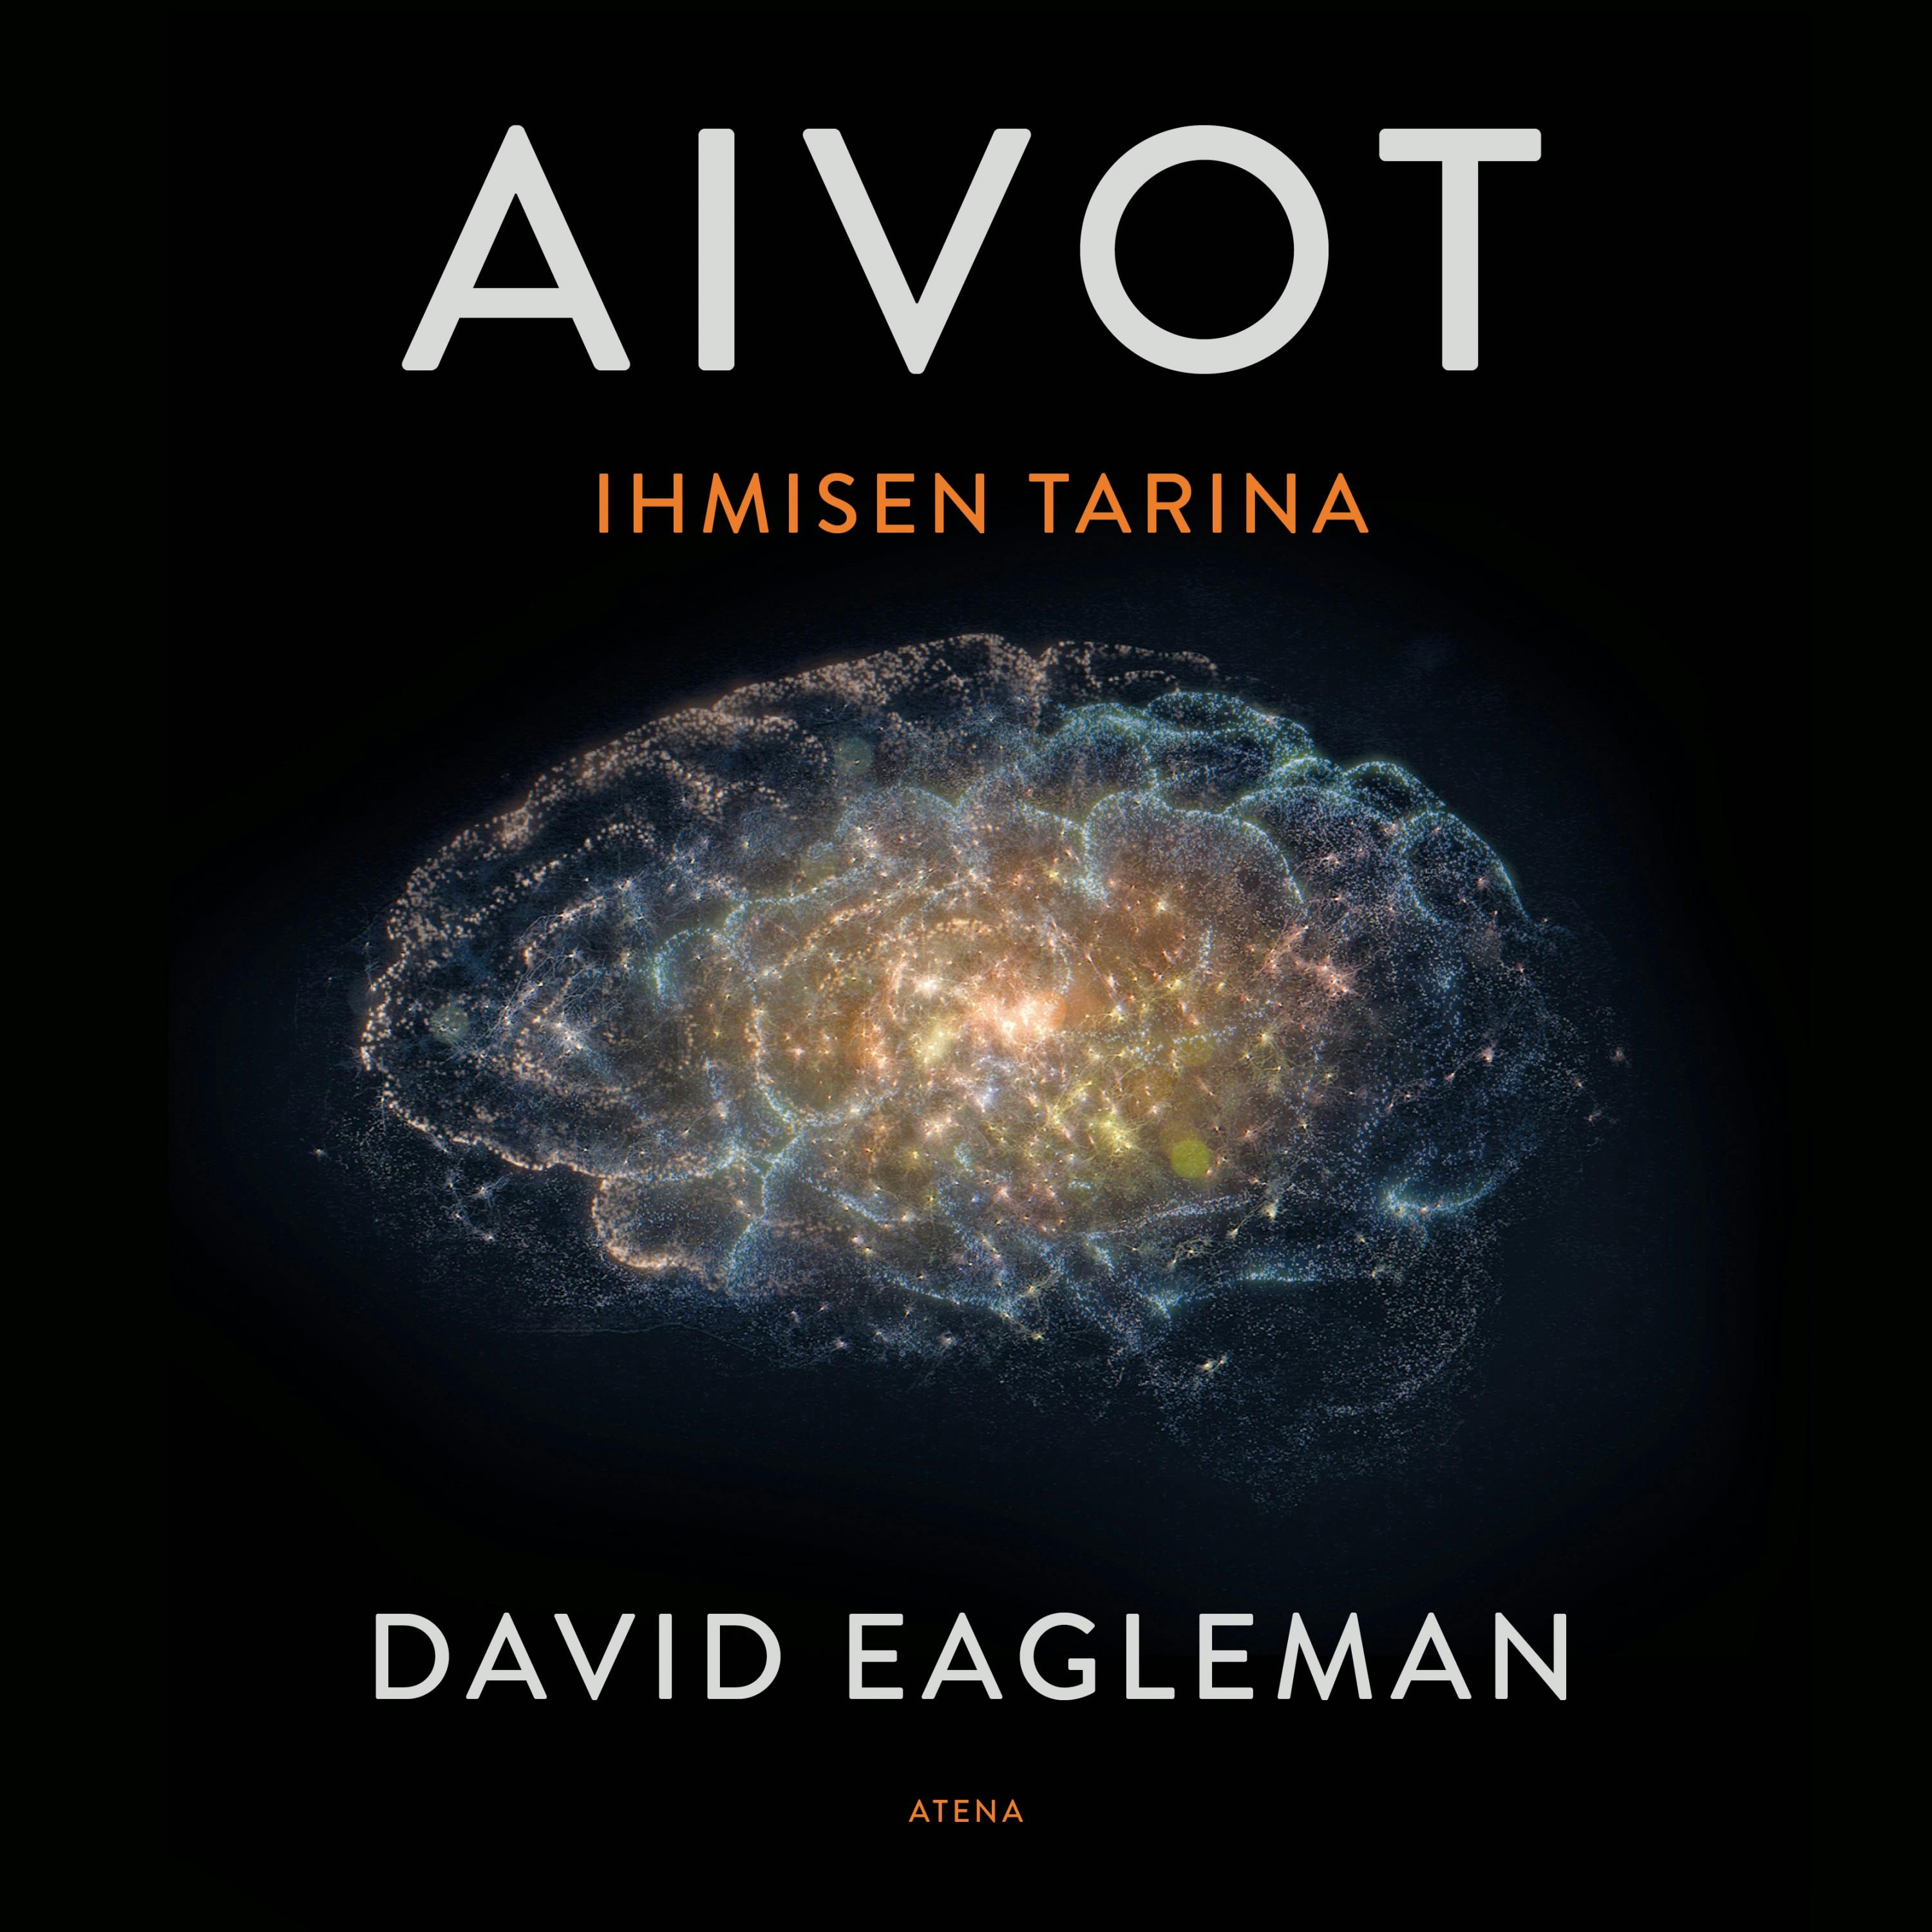 Aivot - Ihmisen tarina - David Eagleman